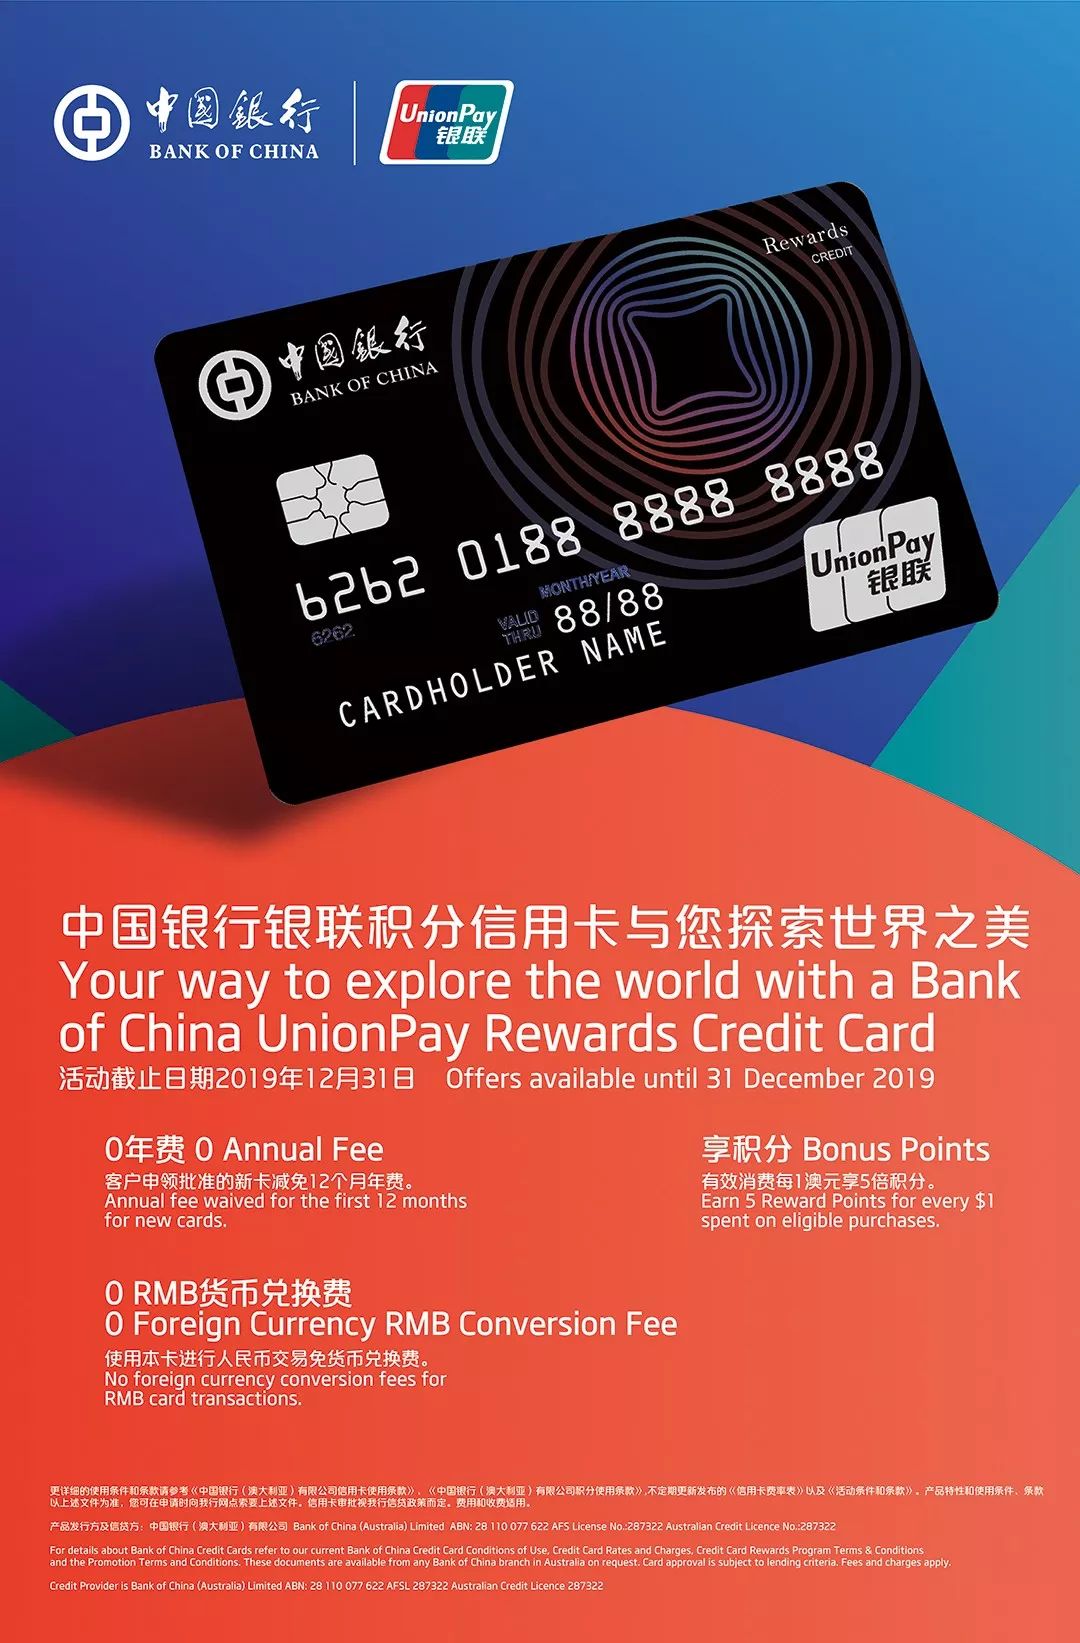 中国银行信用卡广告图片